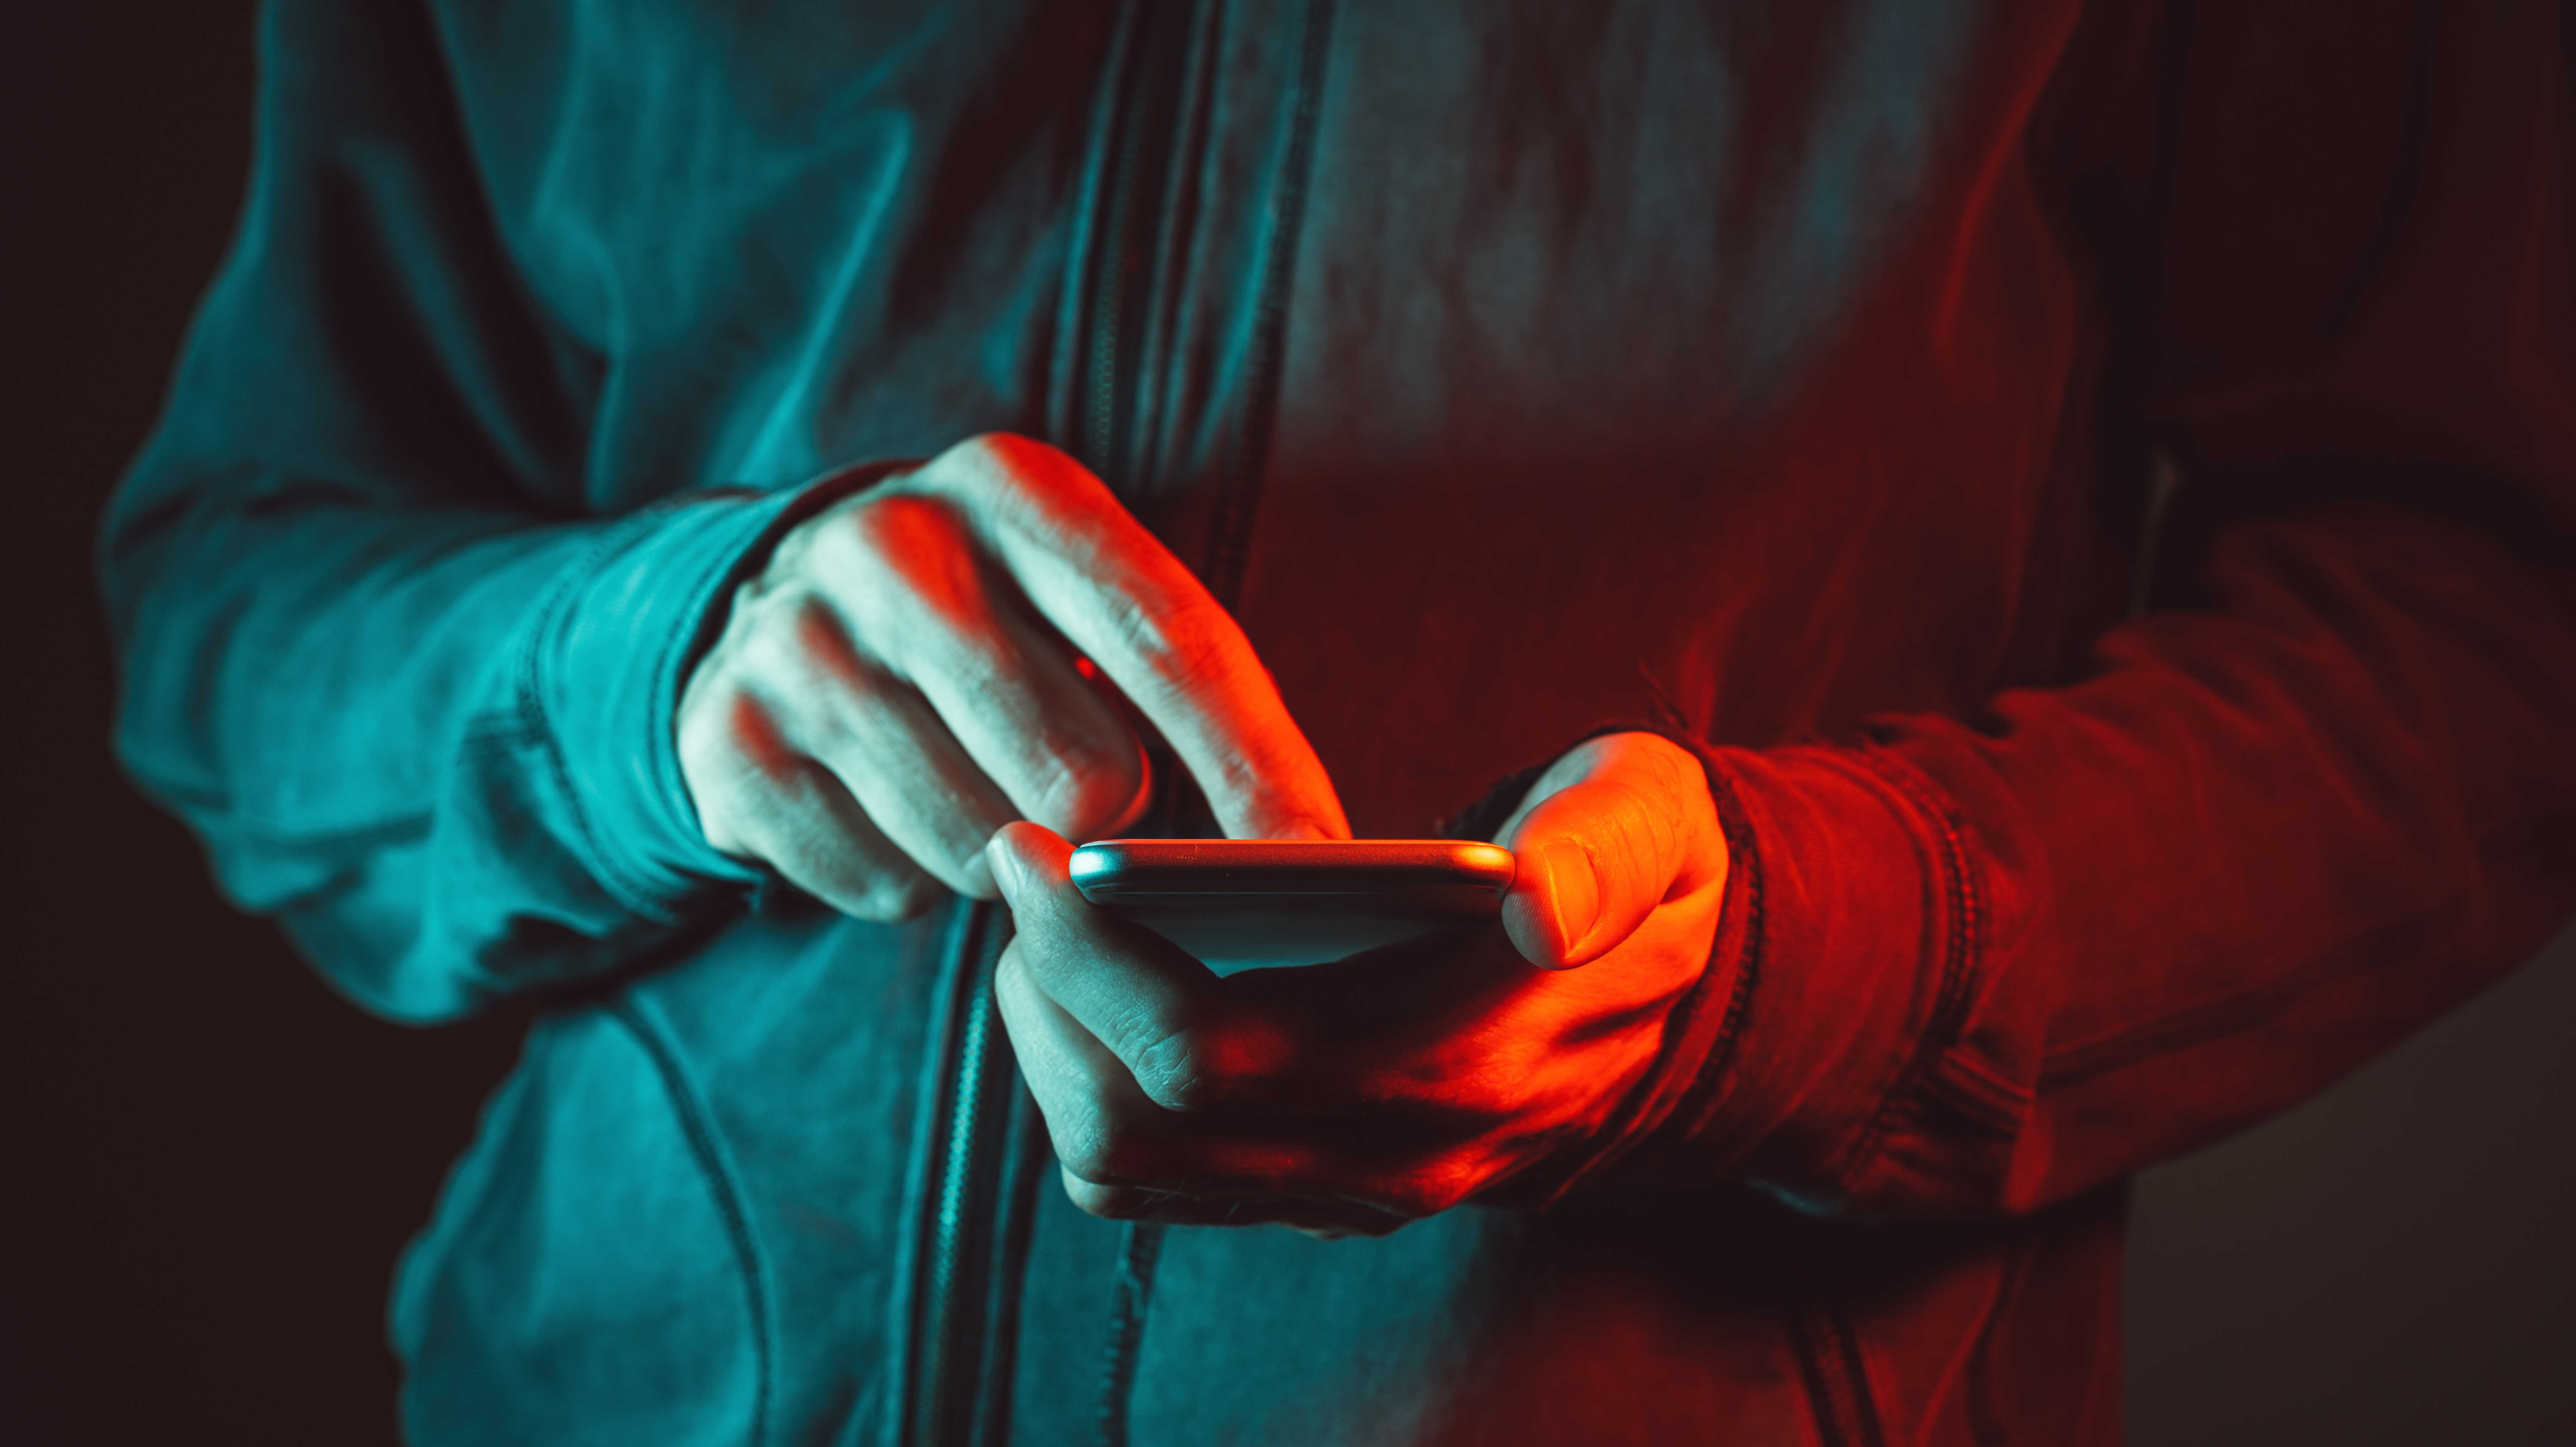 Hände am Smartphone, alles gehüllt in rotes Licht